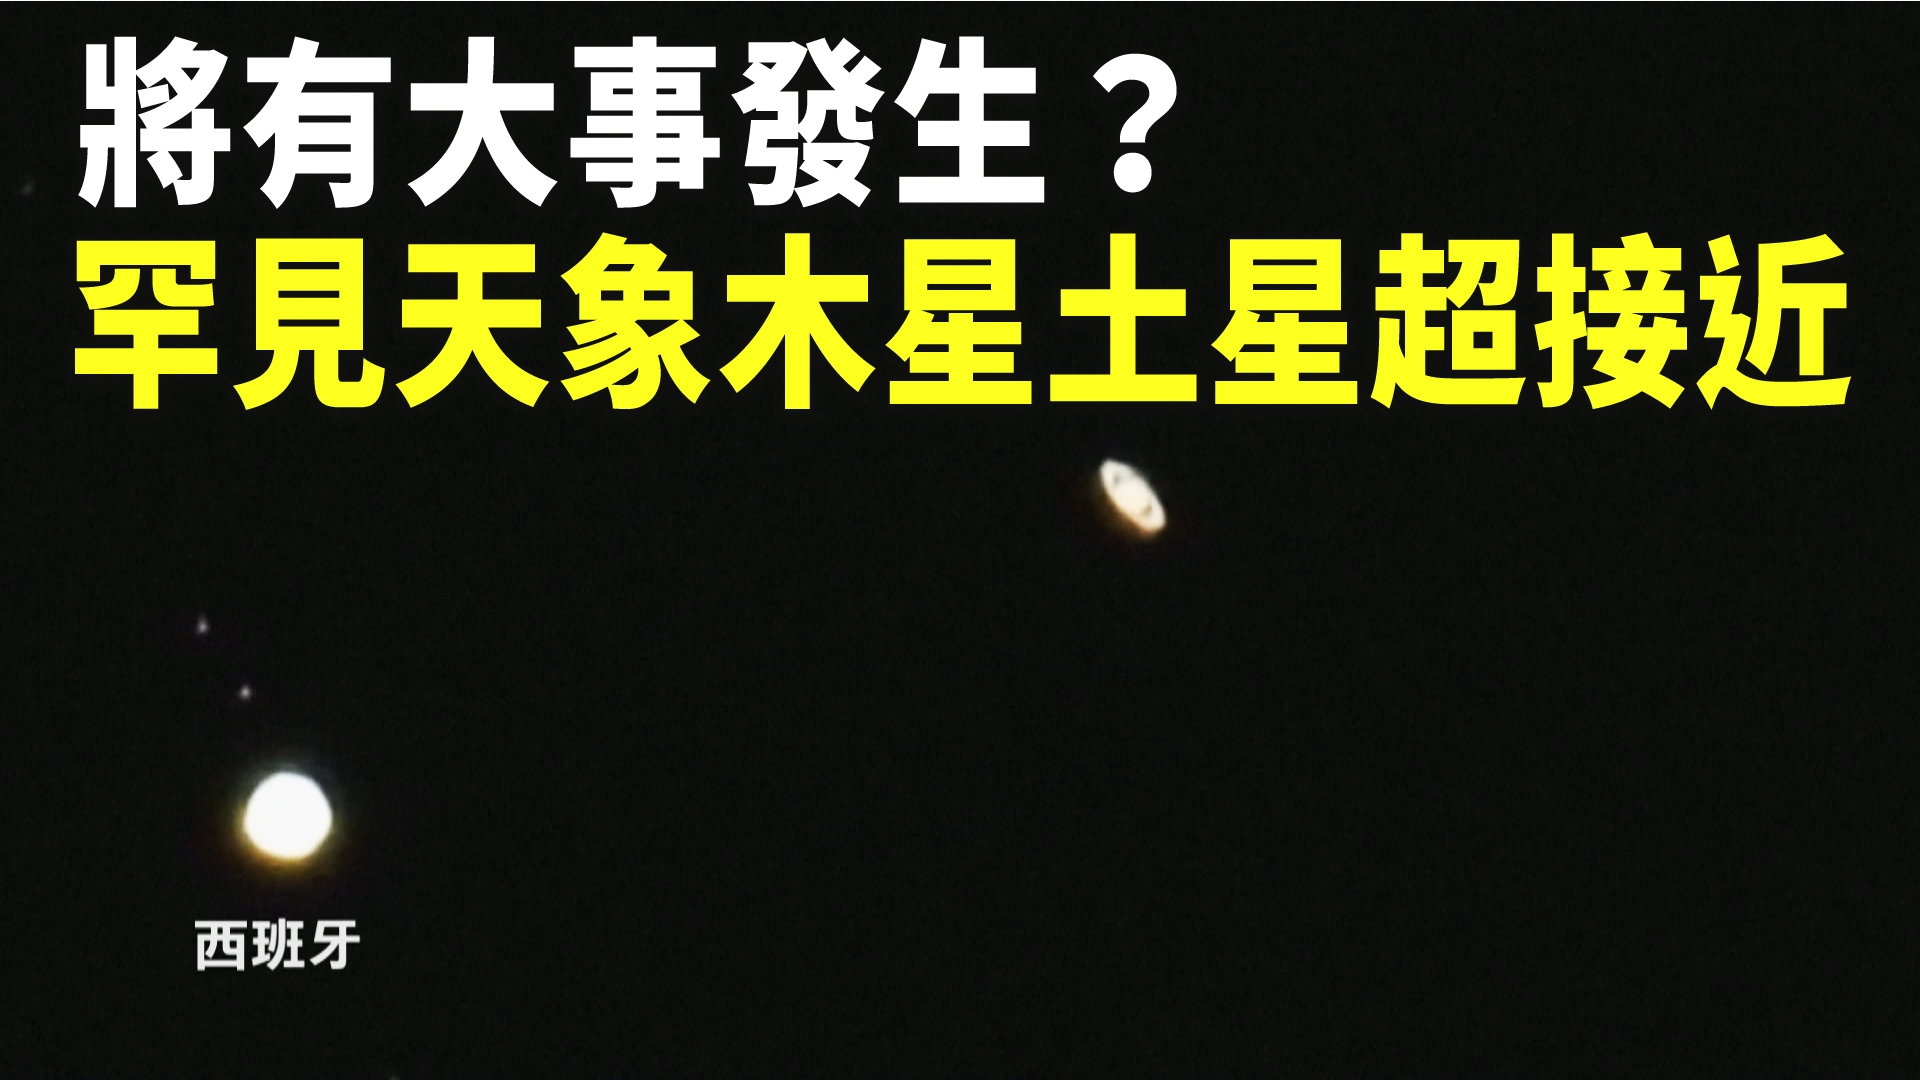 將有大事發生 罕見天象木星土星超接近 新唐人亞太電視台